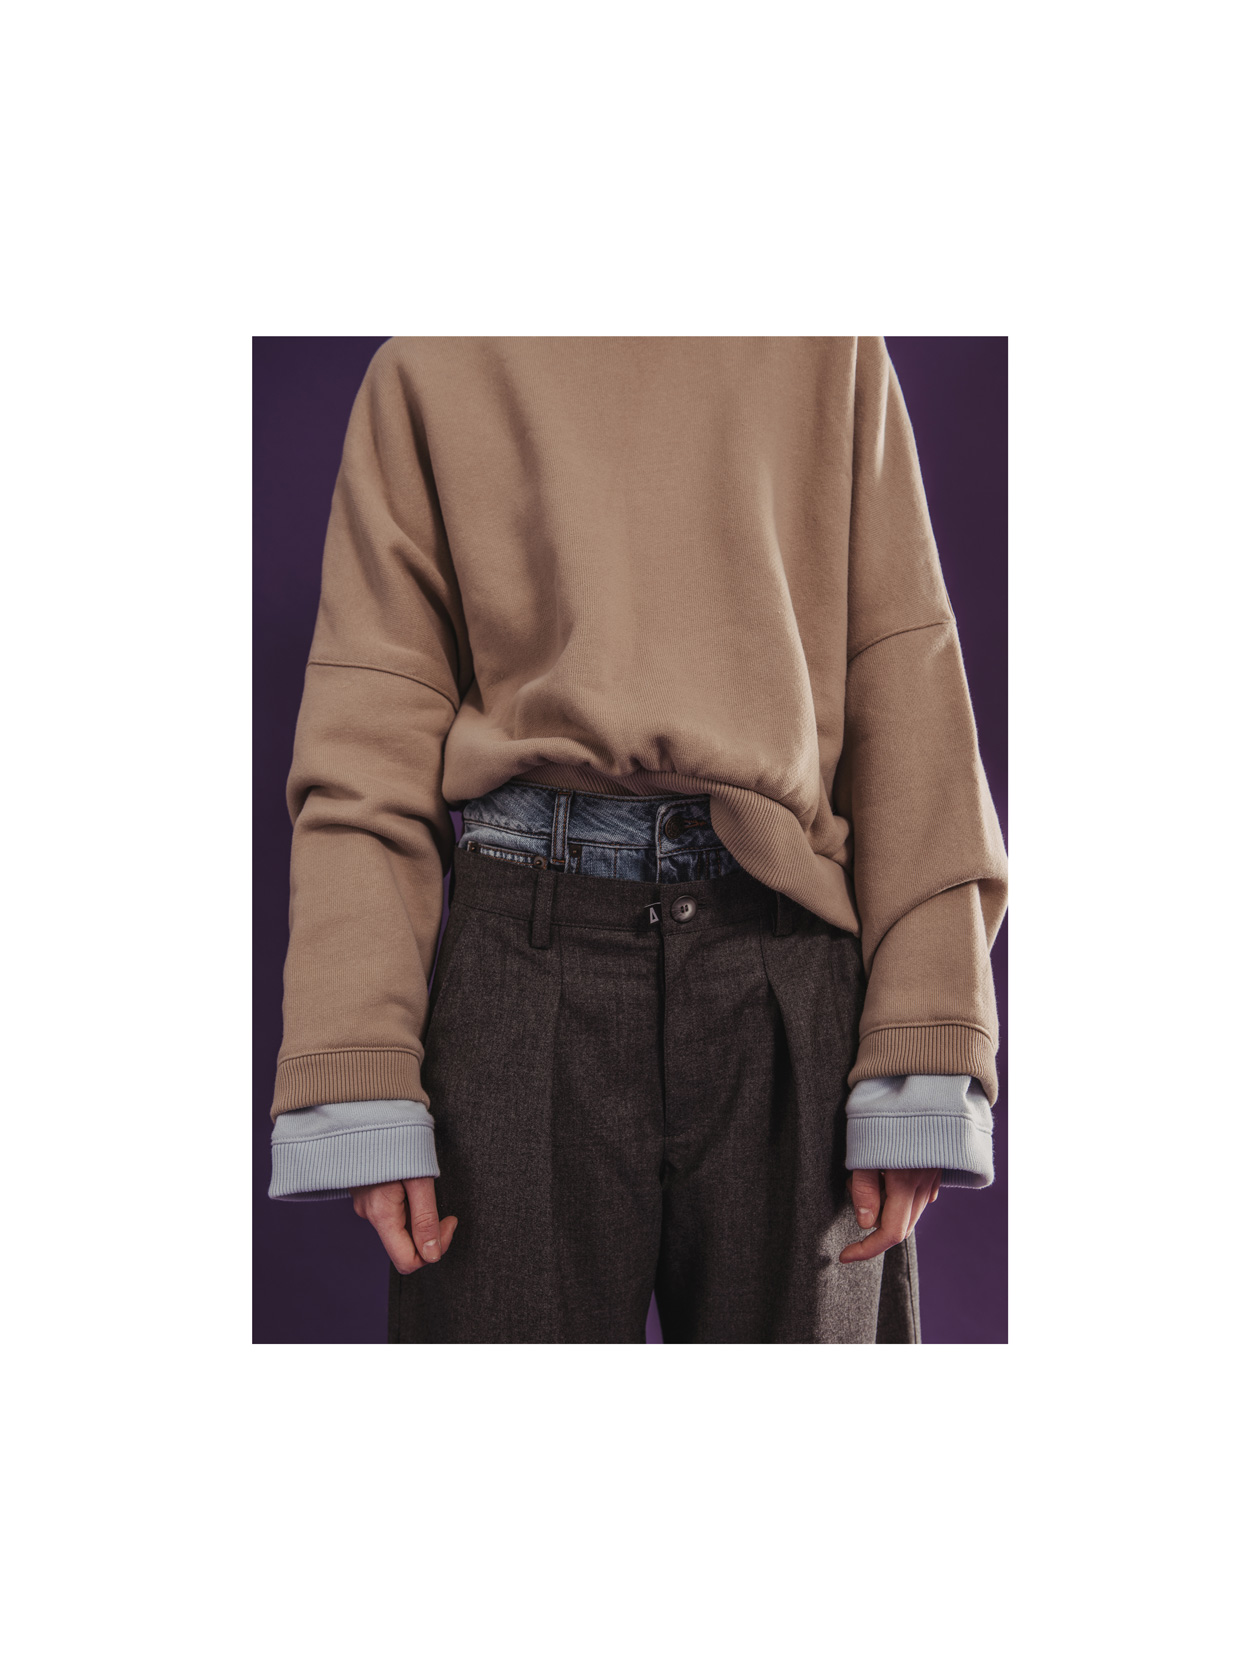 суитшърти H&M, дънки Maison Margiela от Plus Zero Concept Store, панталон Lame God